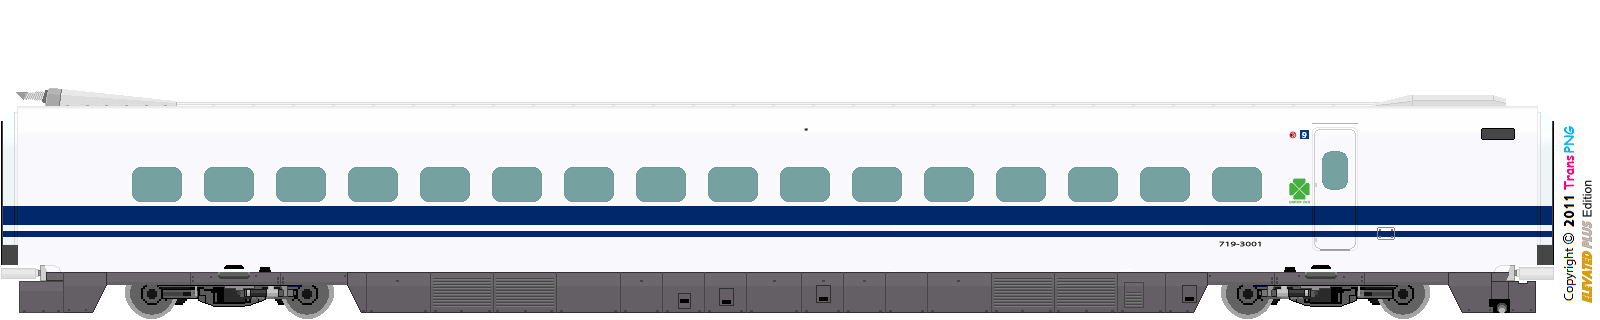 [9012] West Japan Railway 52288068720_ea2af4512c_o